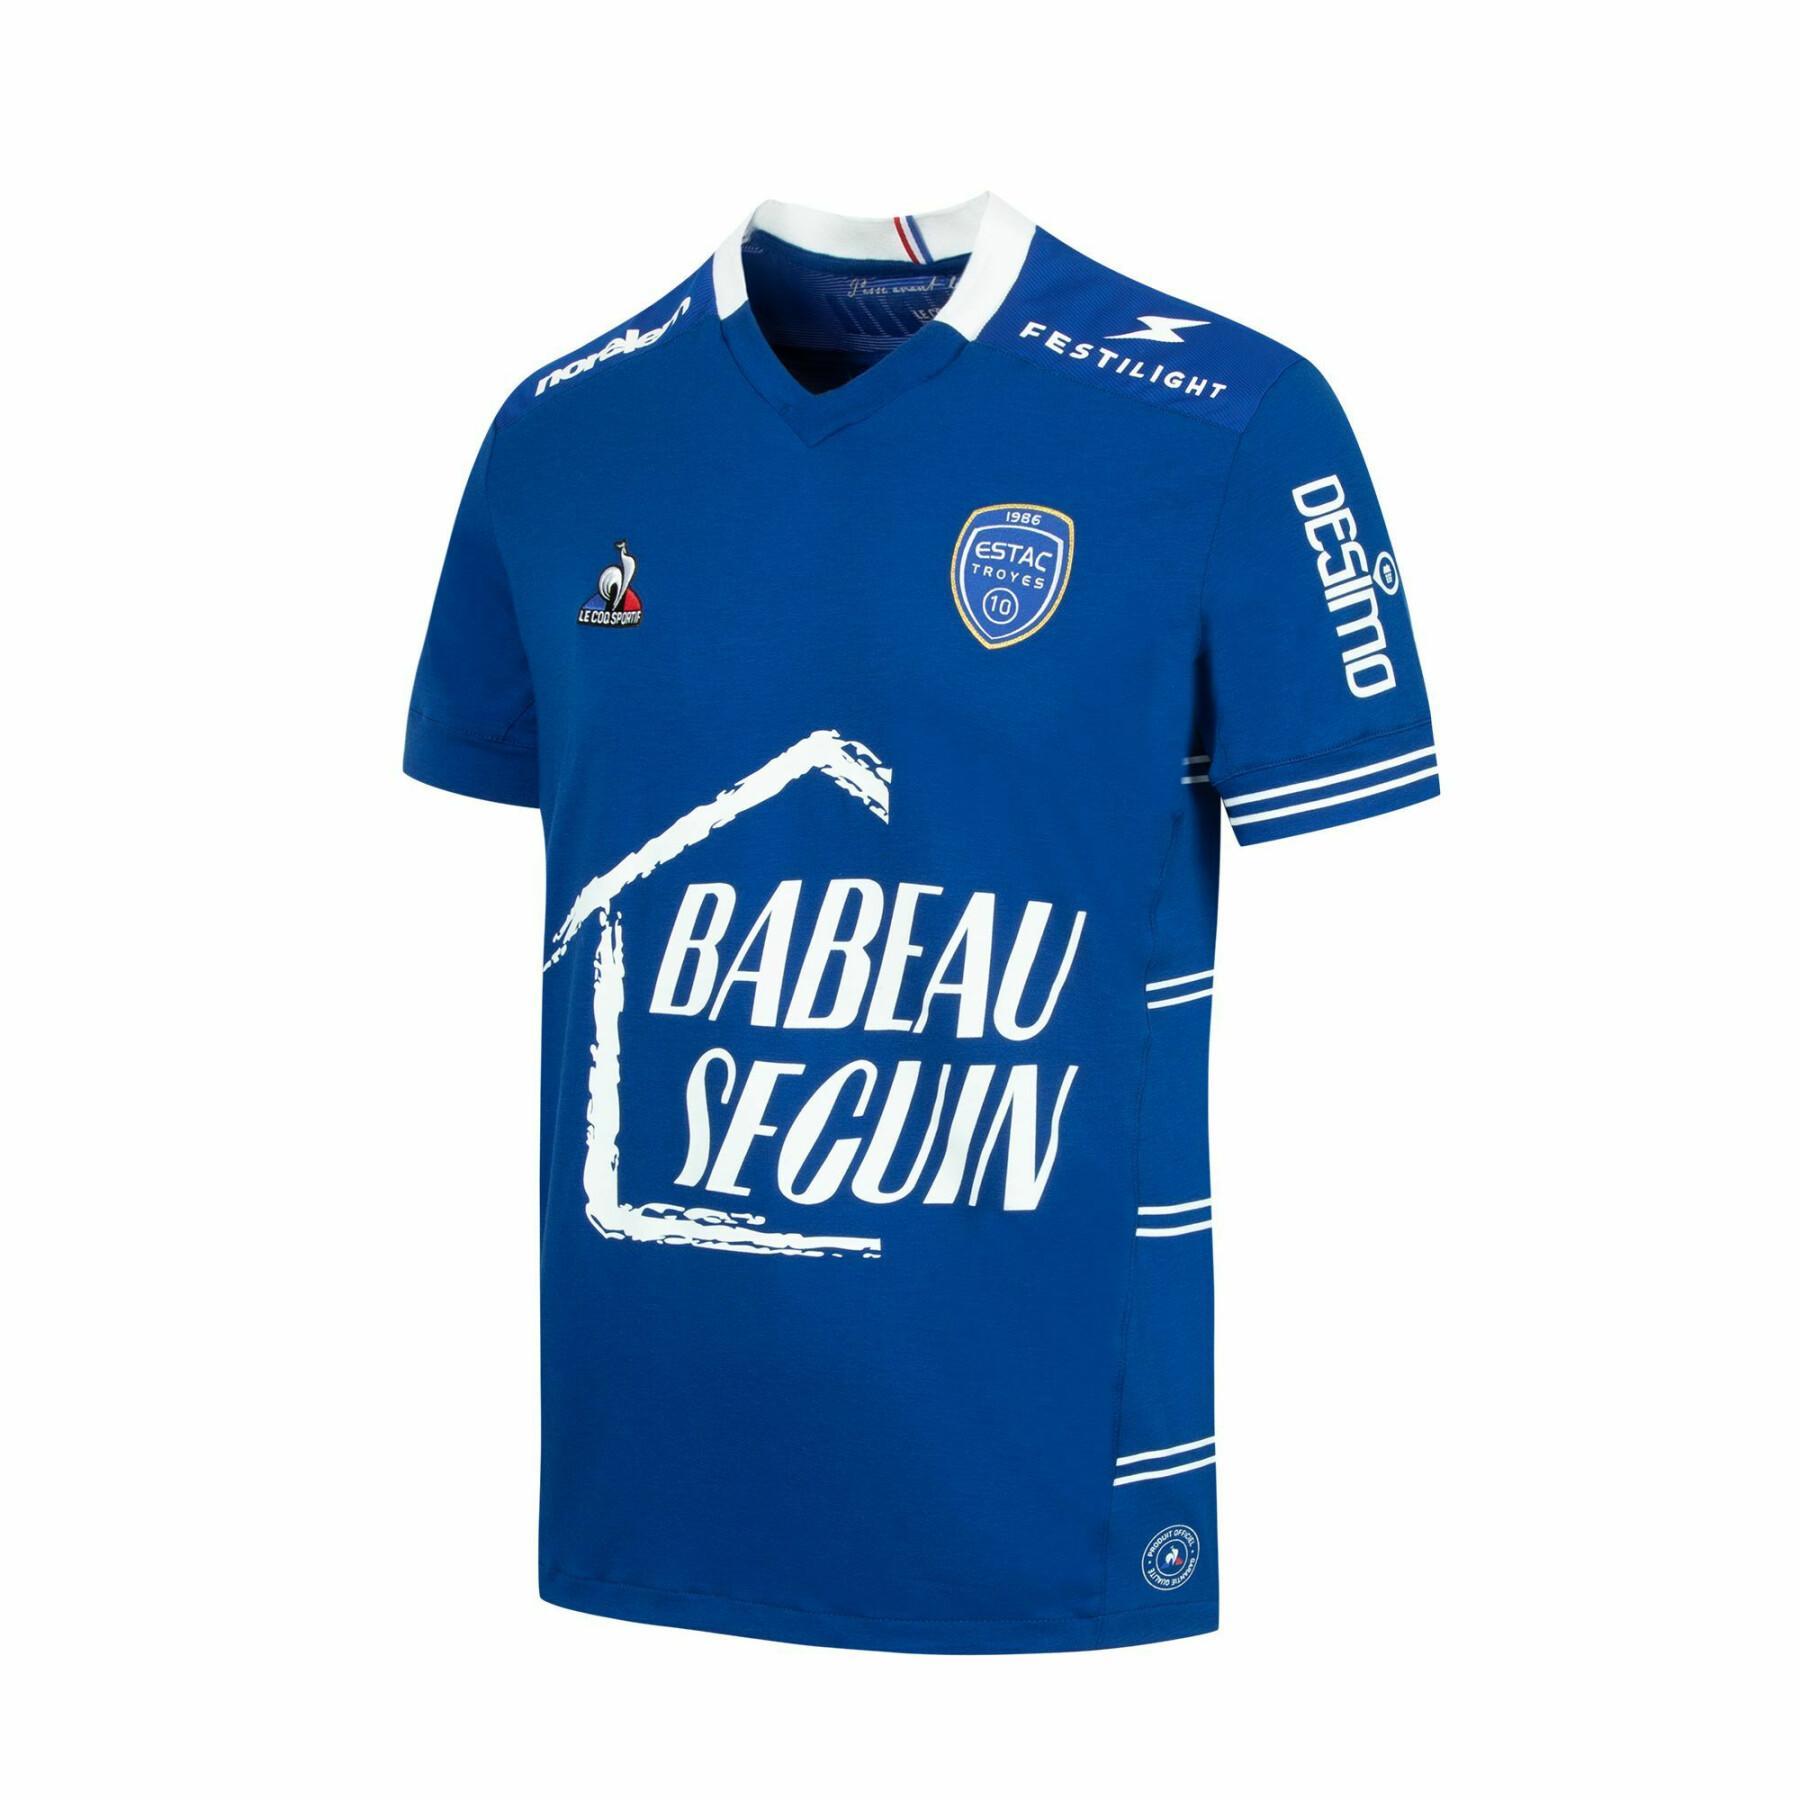 Camiseta primera equipación Estac Troyes 2021/22